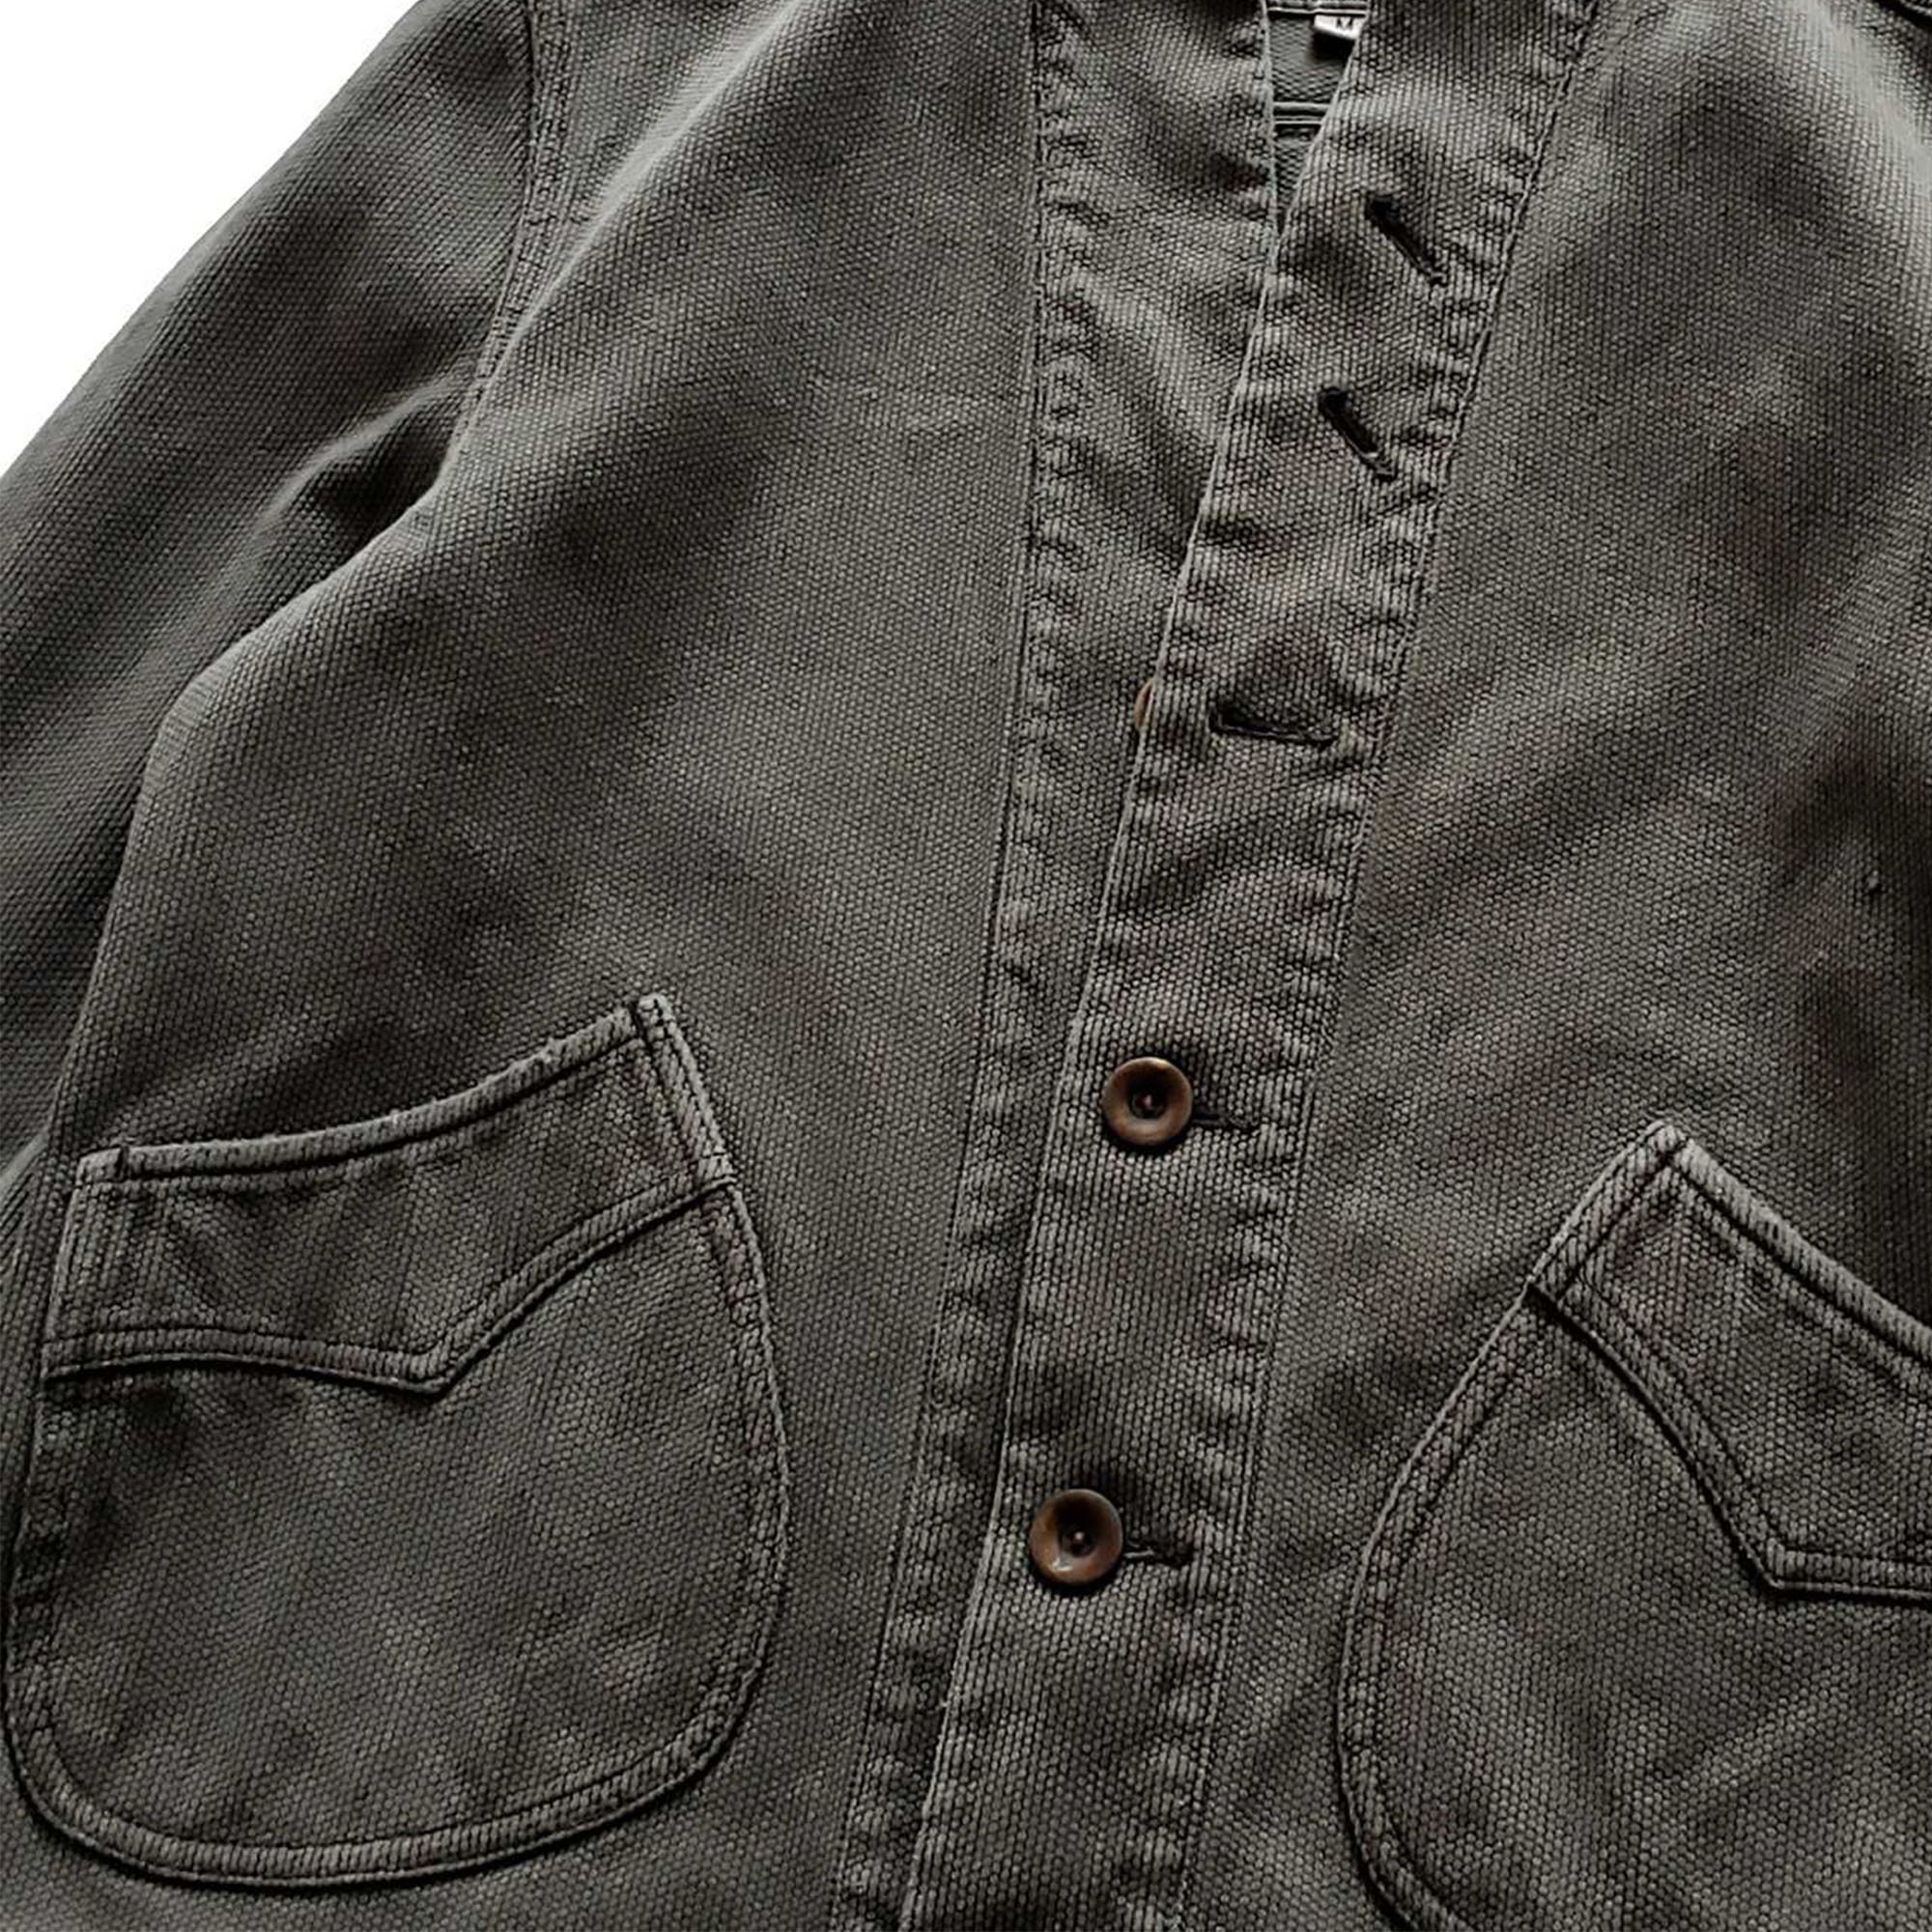 Washed Black Short Jacket Sahiko Fabric Heavy Duty Jacket - Etsy